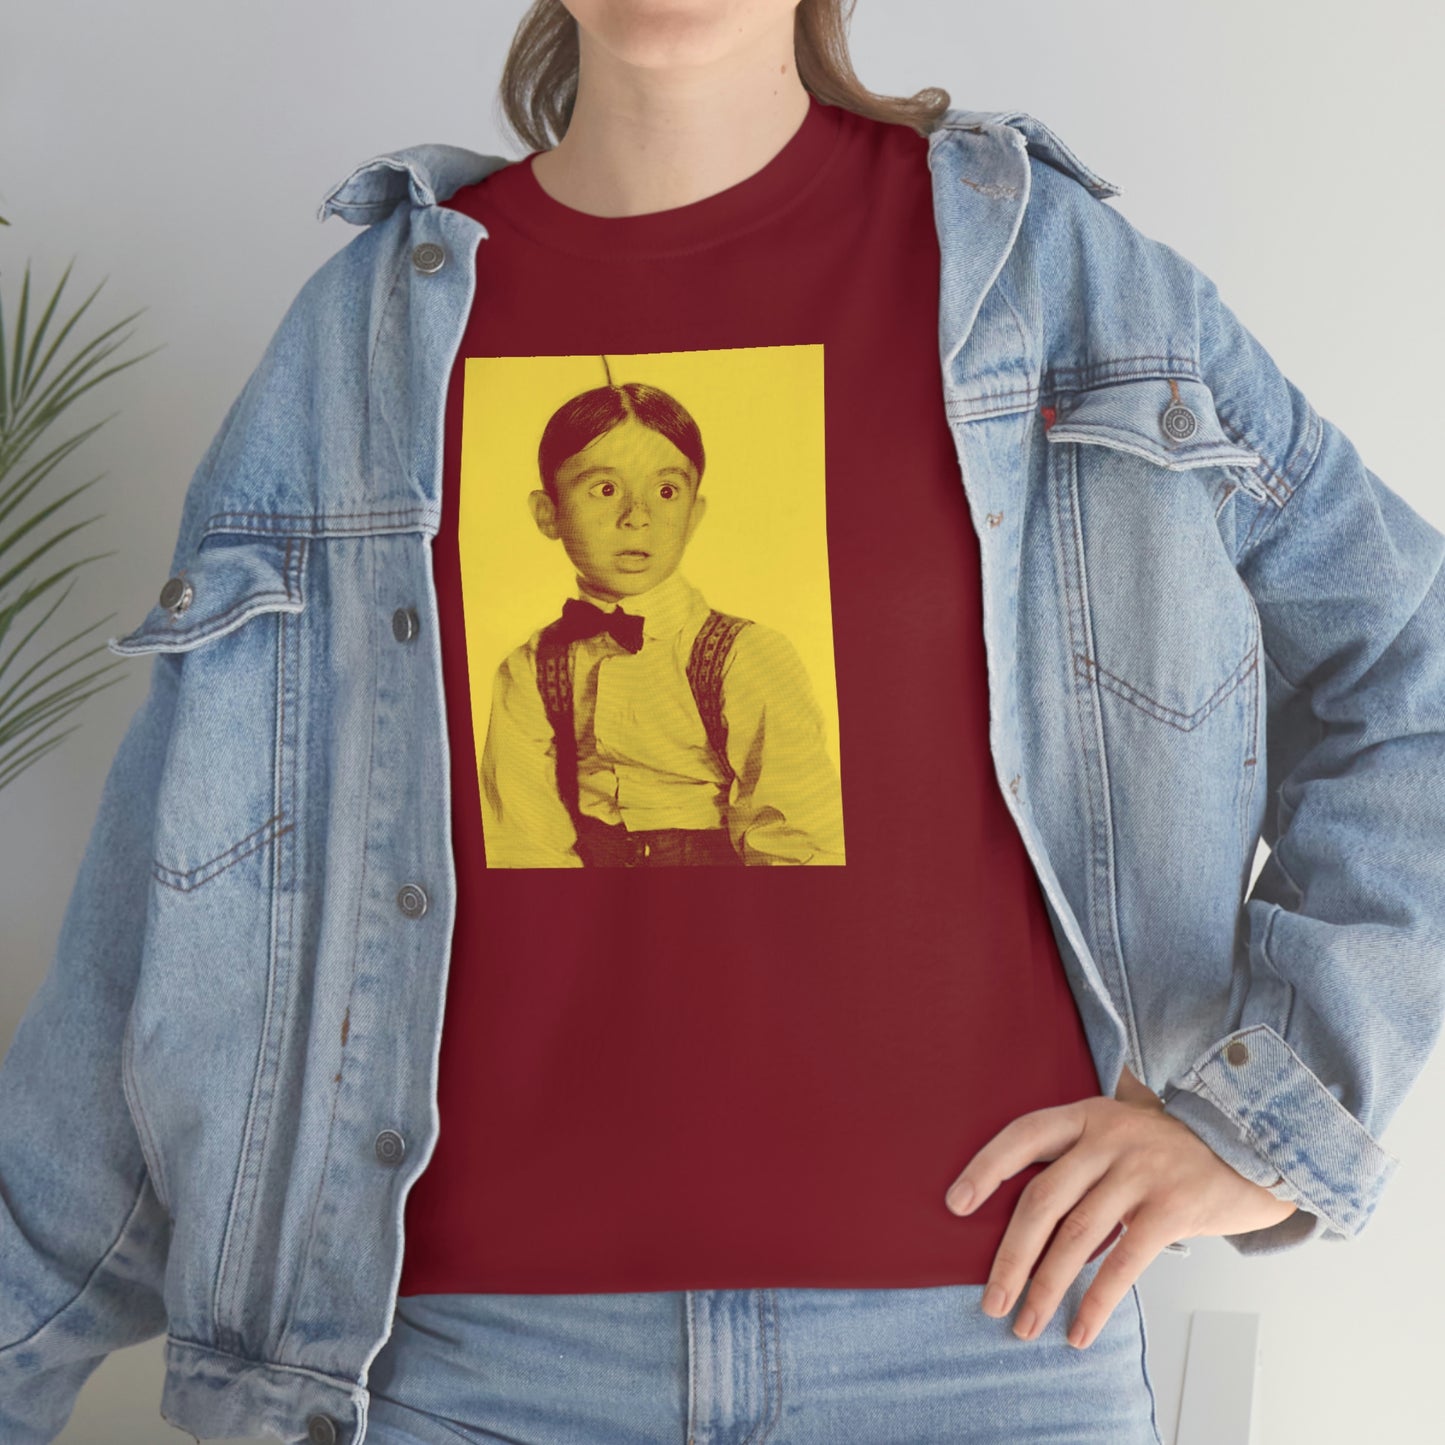 Alfalfa Little Rascals T-Shirt